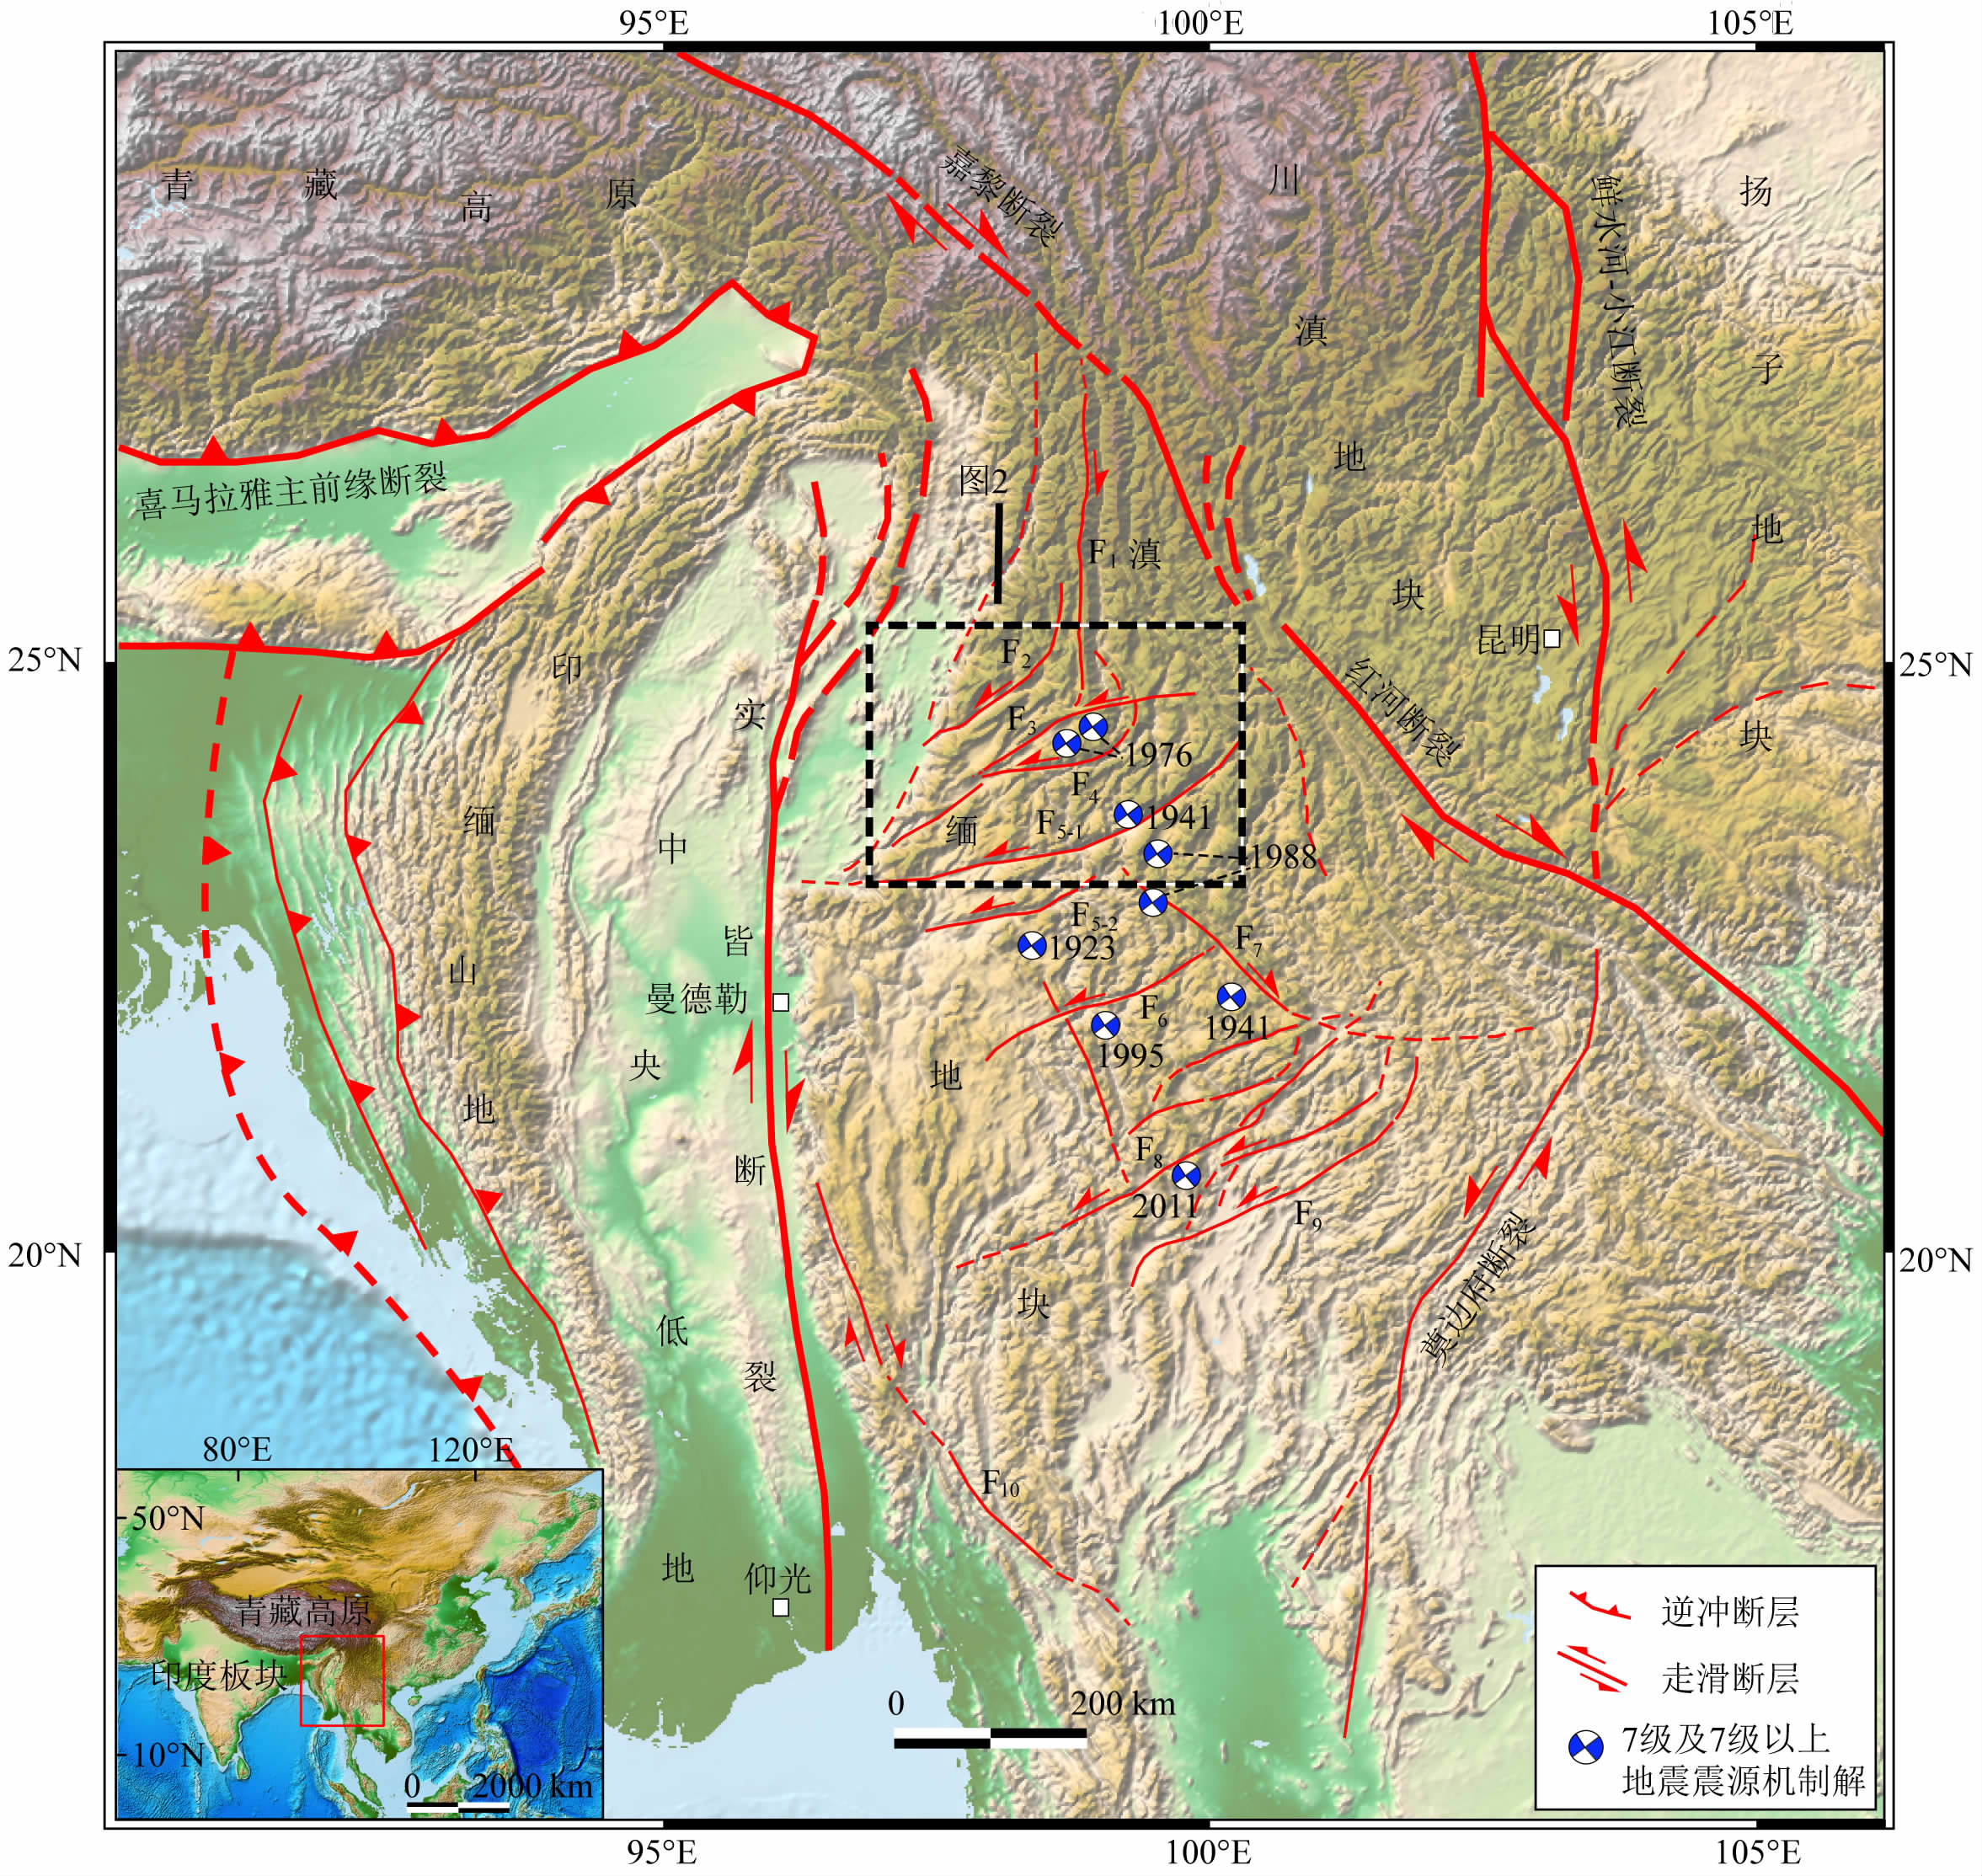 青藏高原东南缘滇缅地块ne向走滑断裂带的新构造活动与大地震性